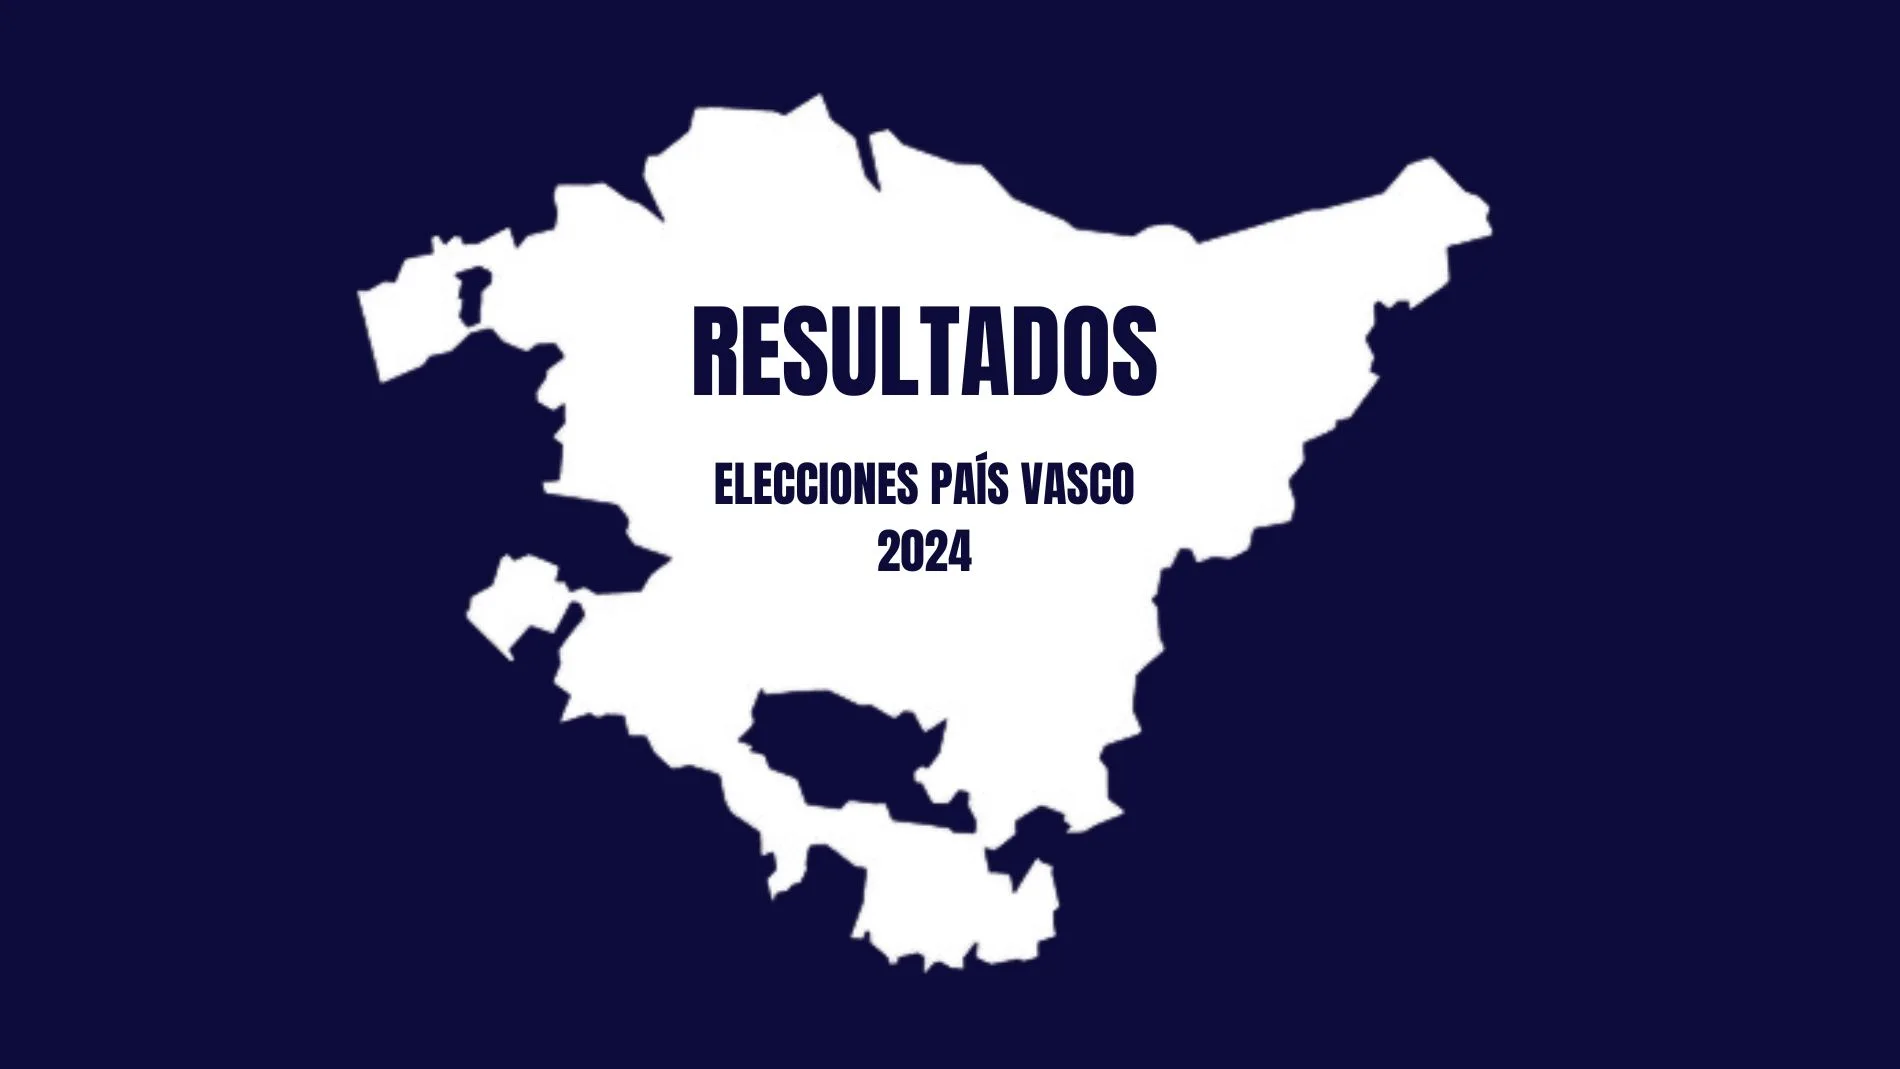 Resultados Elecciones País Vasco 2024